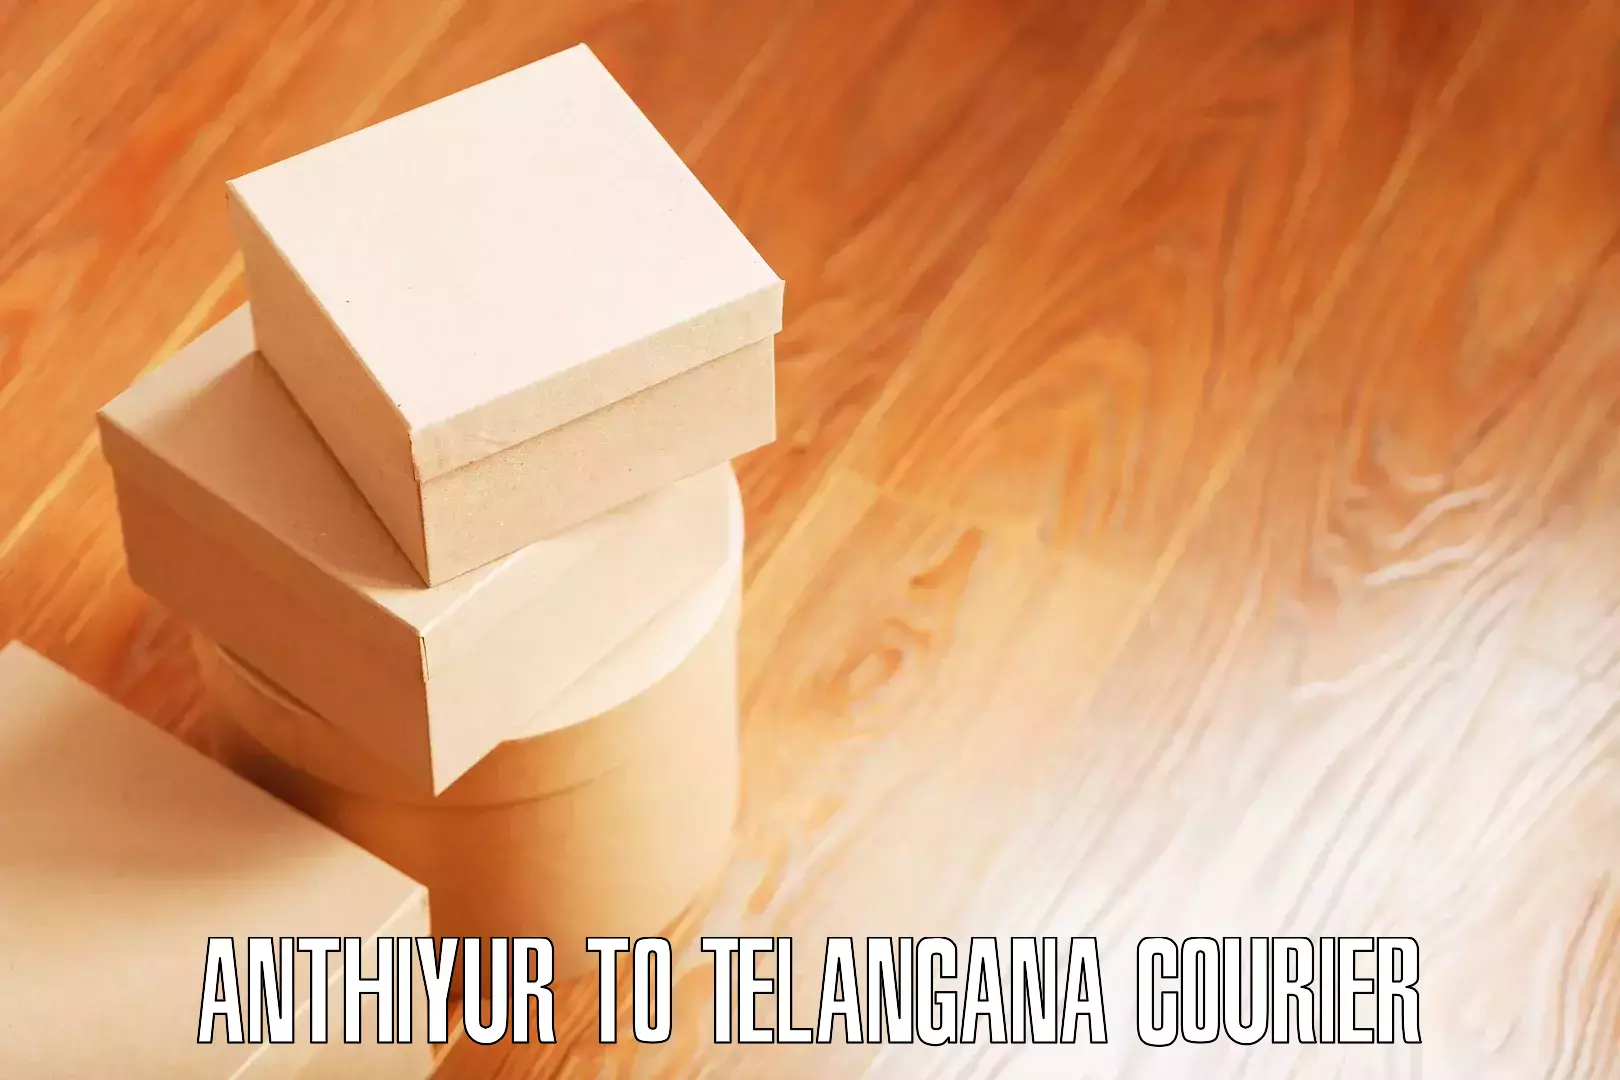 Professional moving company Anthiyur to Thungathurthi